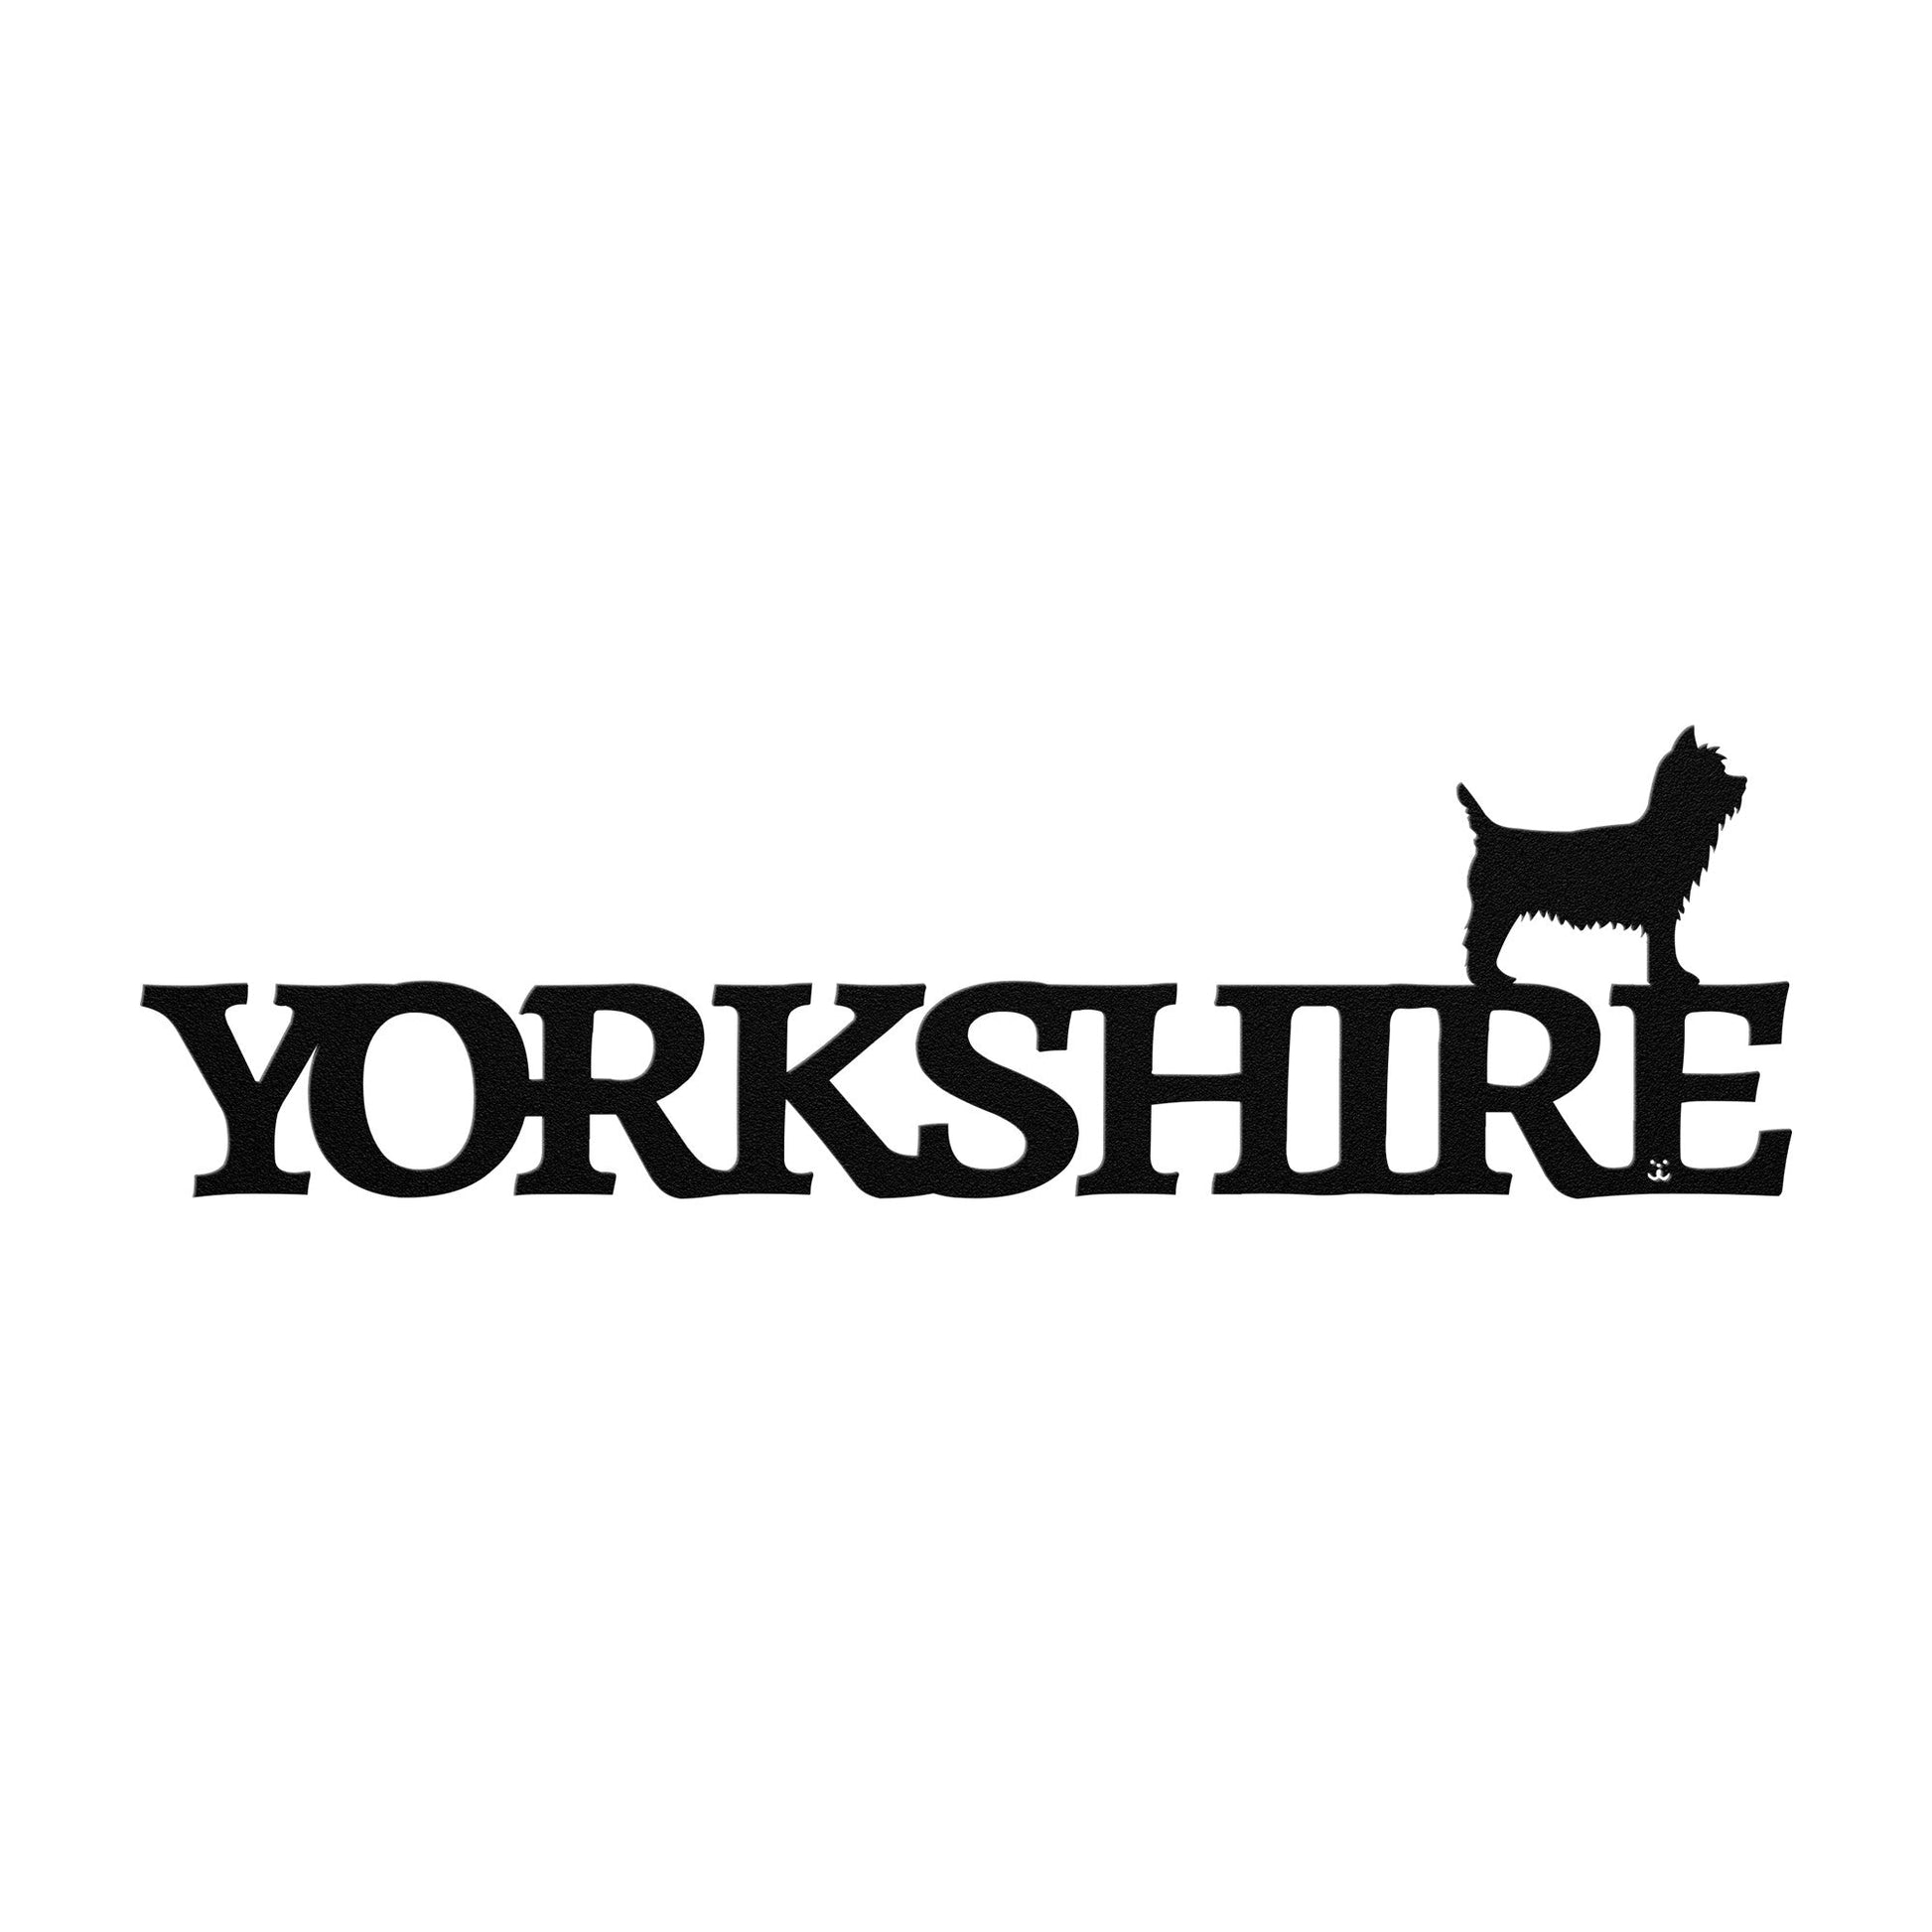 Placa de metal Yorkshire - Identidade i-animals